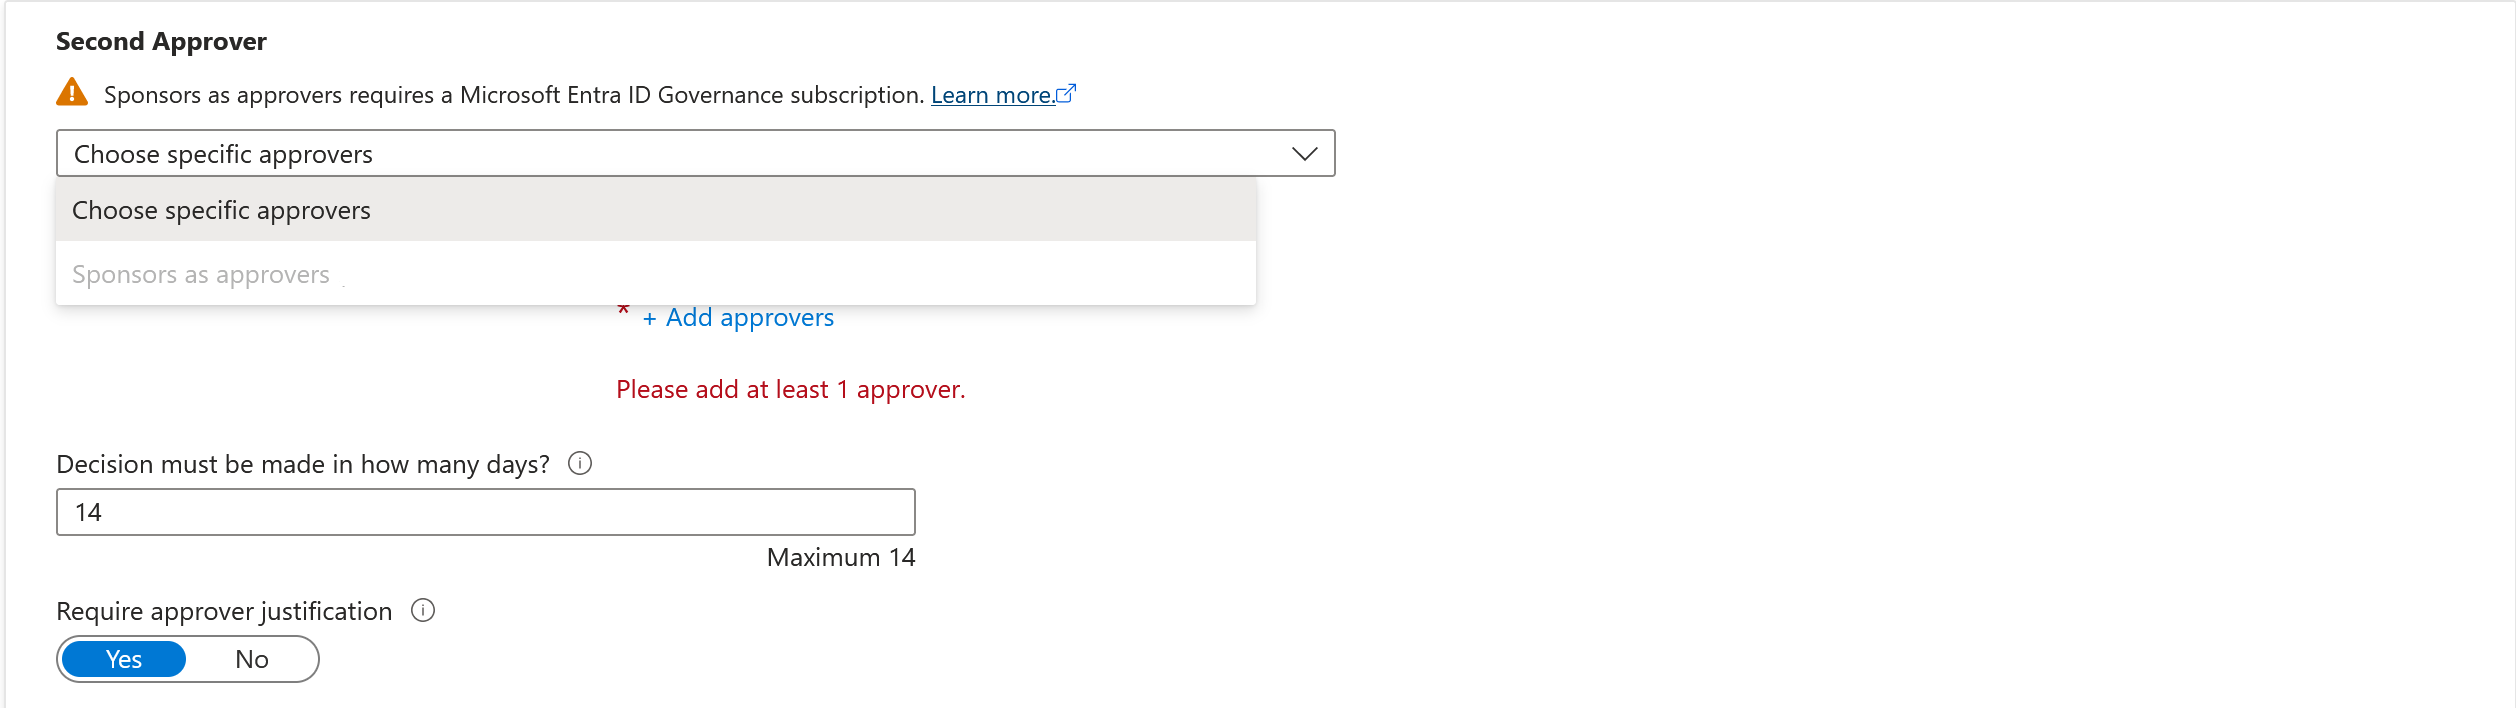 Captura de tela que mostra opções para um segundo aprovador se a política estiver definida para usuários em seu diretório.